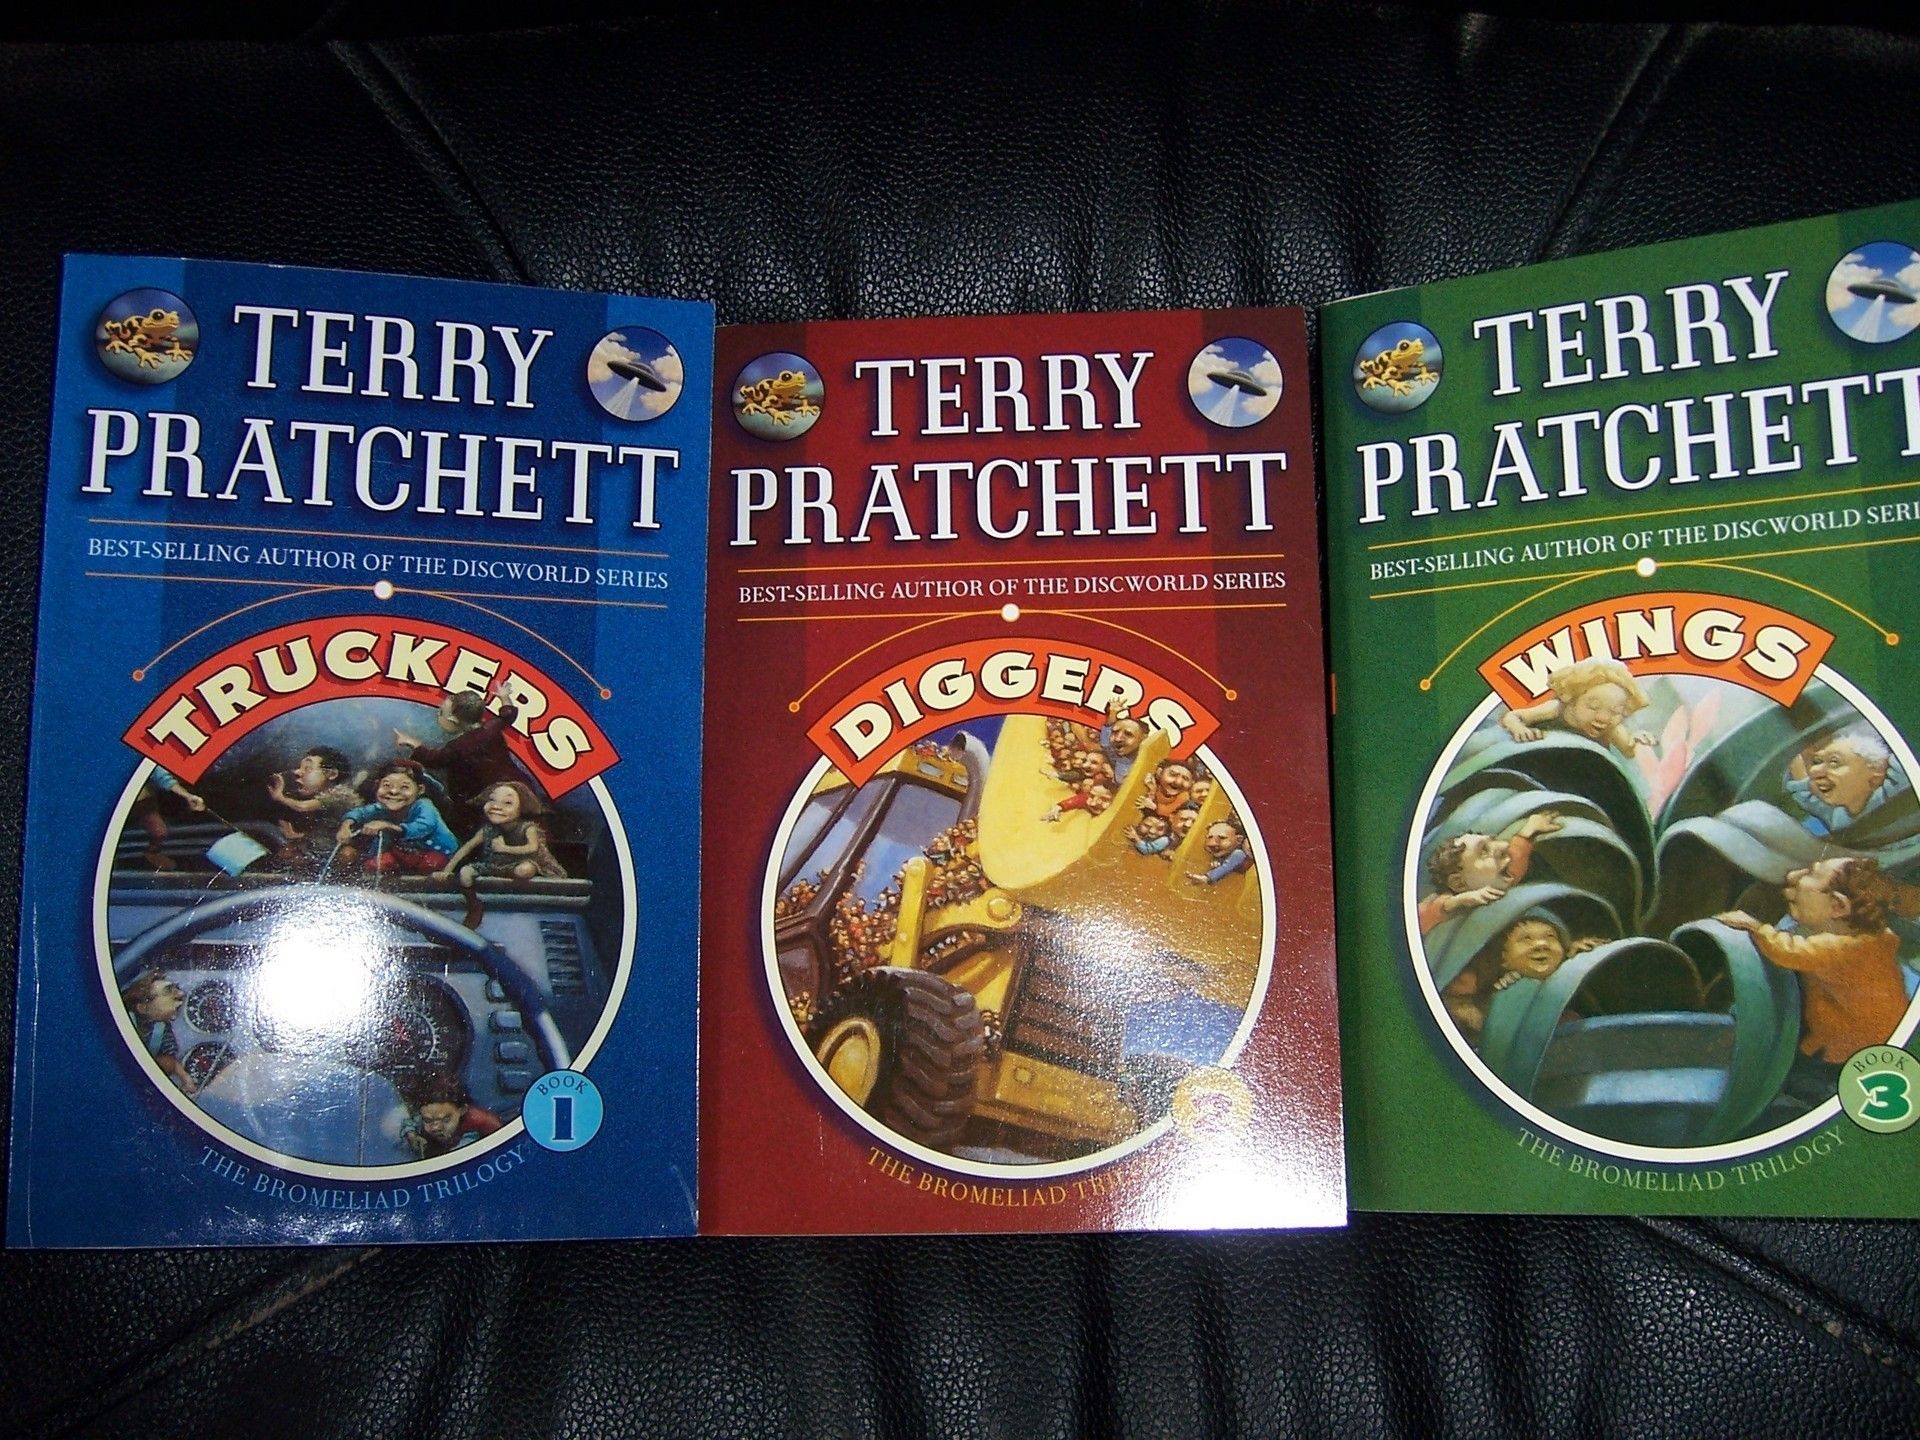 Terry Pratchett Wallpapers - Top Free Terry Pratchett Backgrounds ...